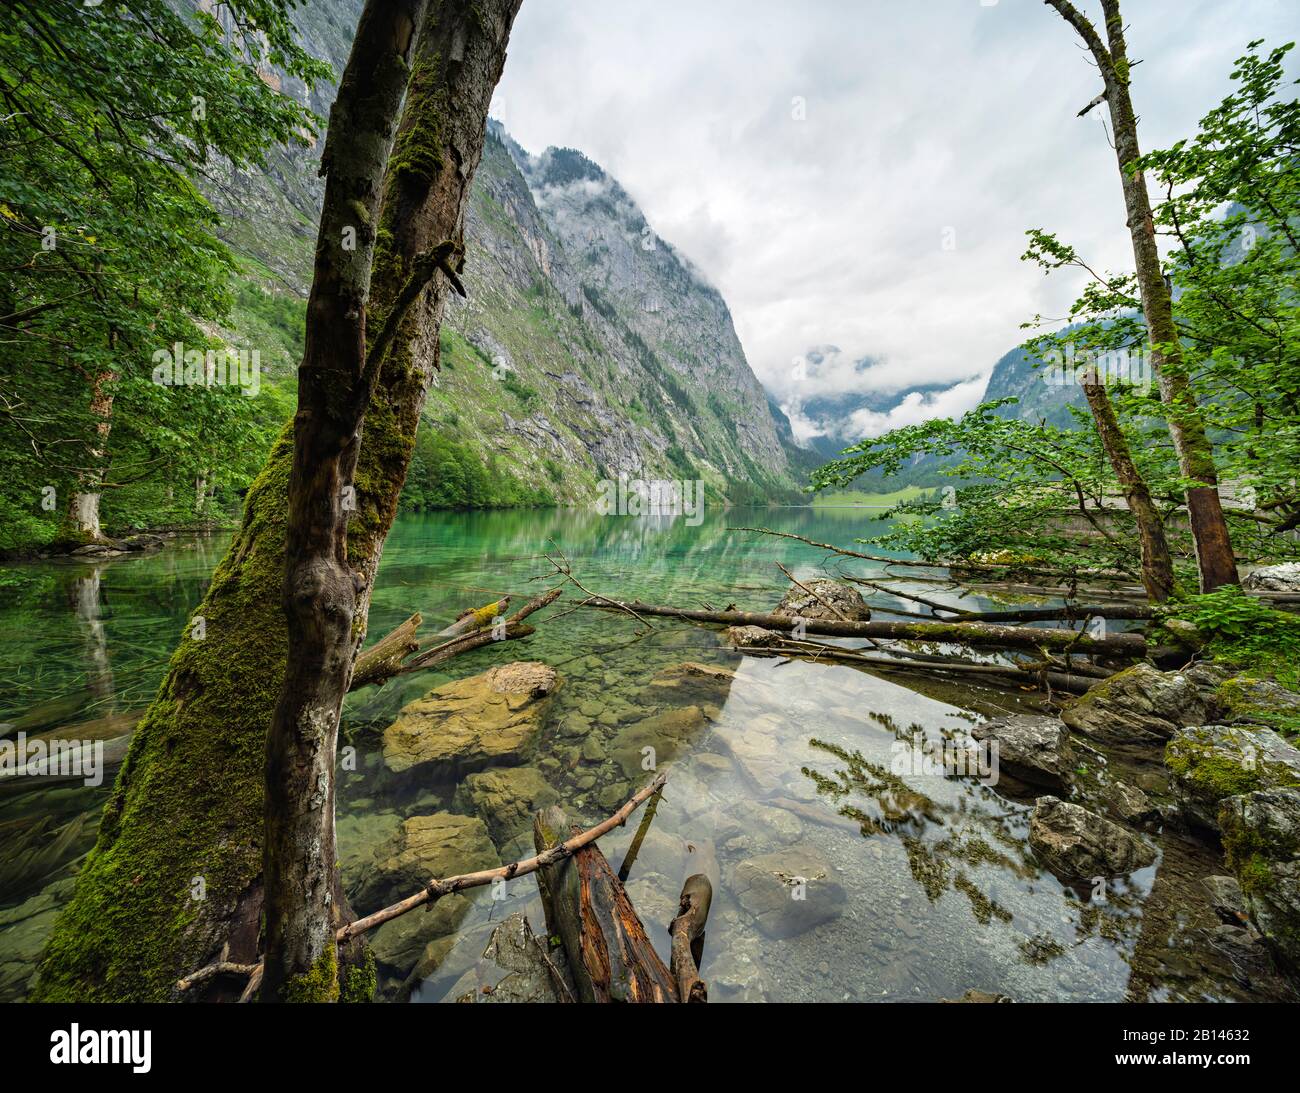 Naturaleza intacta a orillas del Obersee, troncos de árboles en el agua, nubes bajas colgantes, Parque Nacional Berchtesgaden, Baviera, Alemania Foto de stock